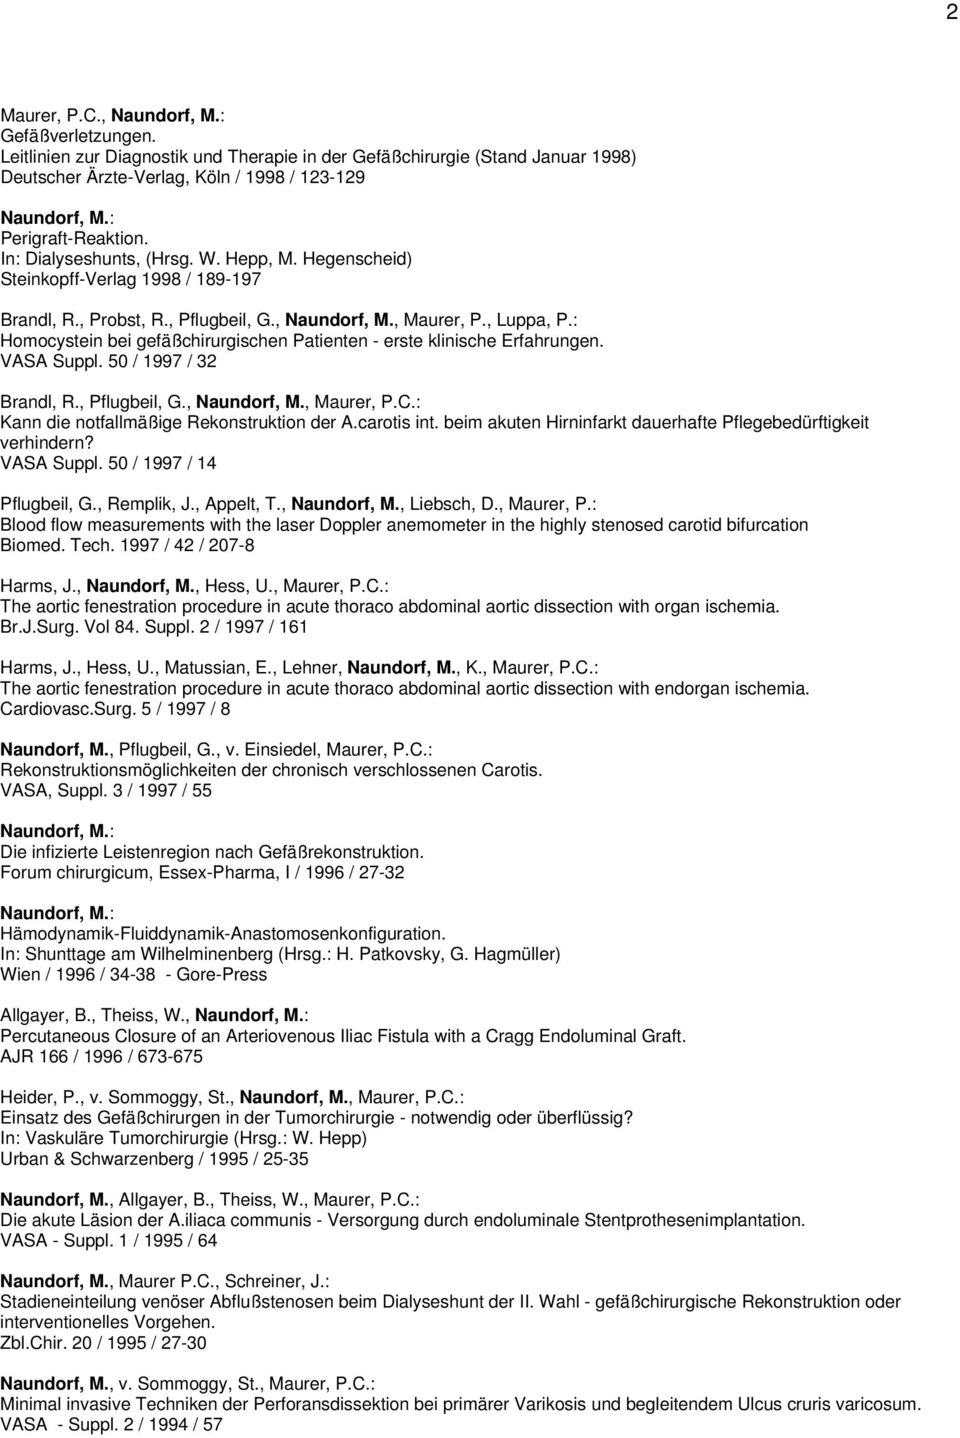 : Homocystein bei gefäßchirurgischen Patienten - erste klinische Erfahrungen. VASA Suppl. 50 / 1997 / 32 Brandl, R., Pflugbeil, G.,, Maurer, P.C.: Kann die notfallmäßige Rekonstruktion der A.